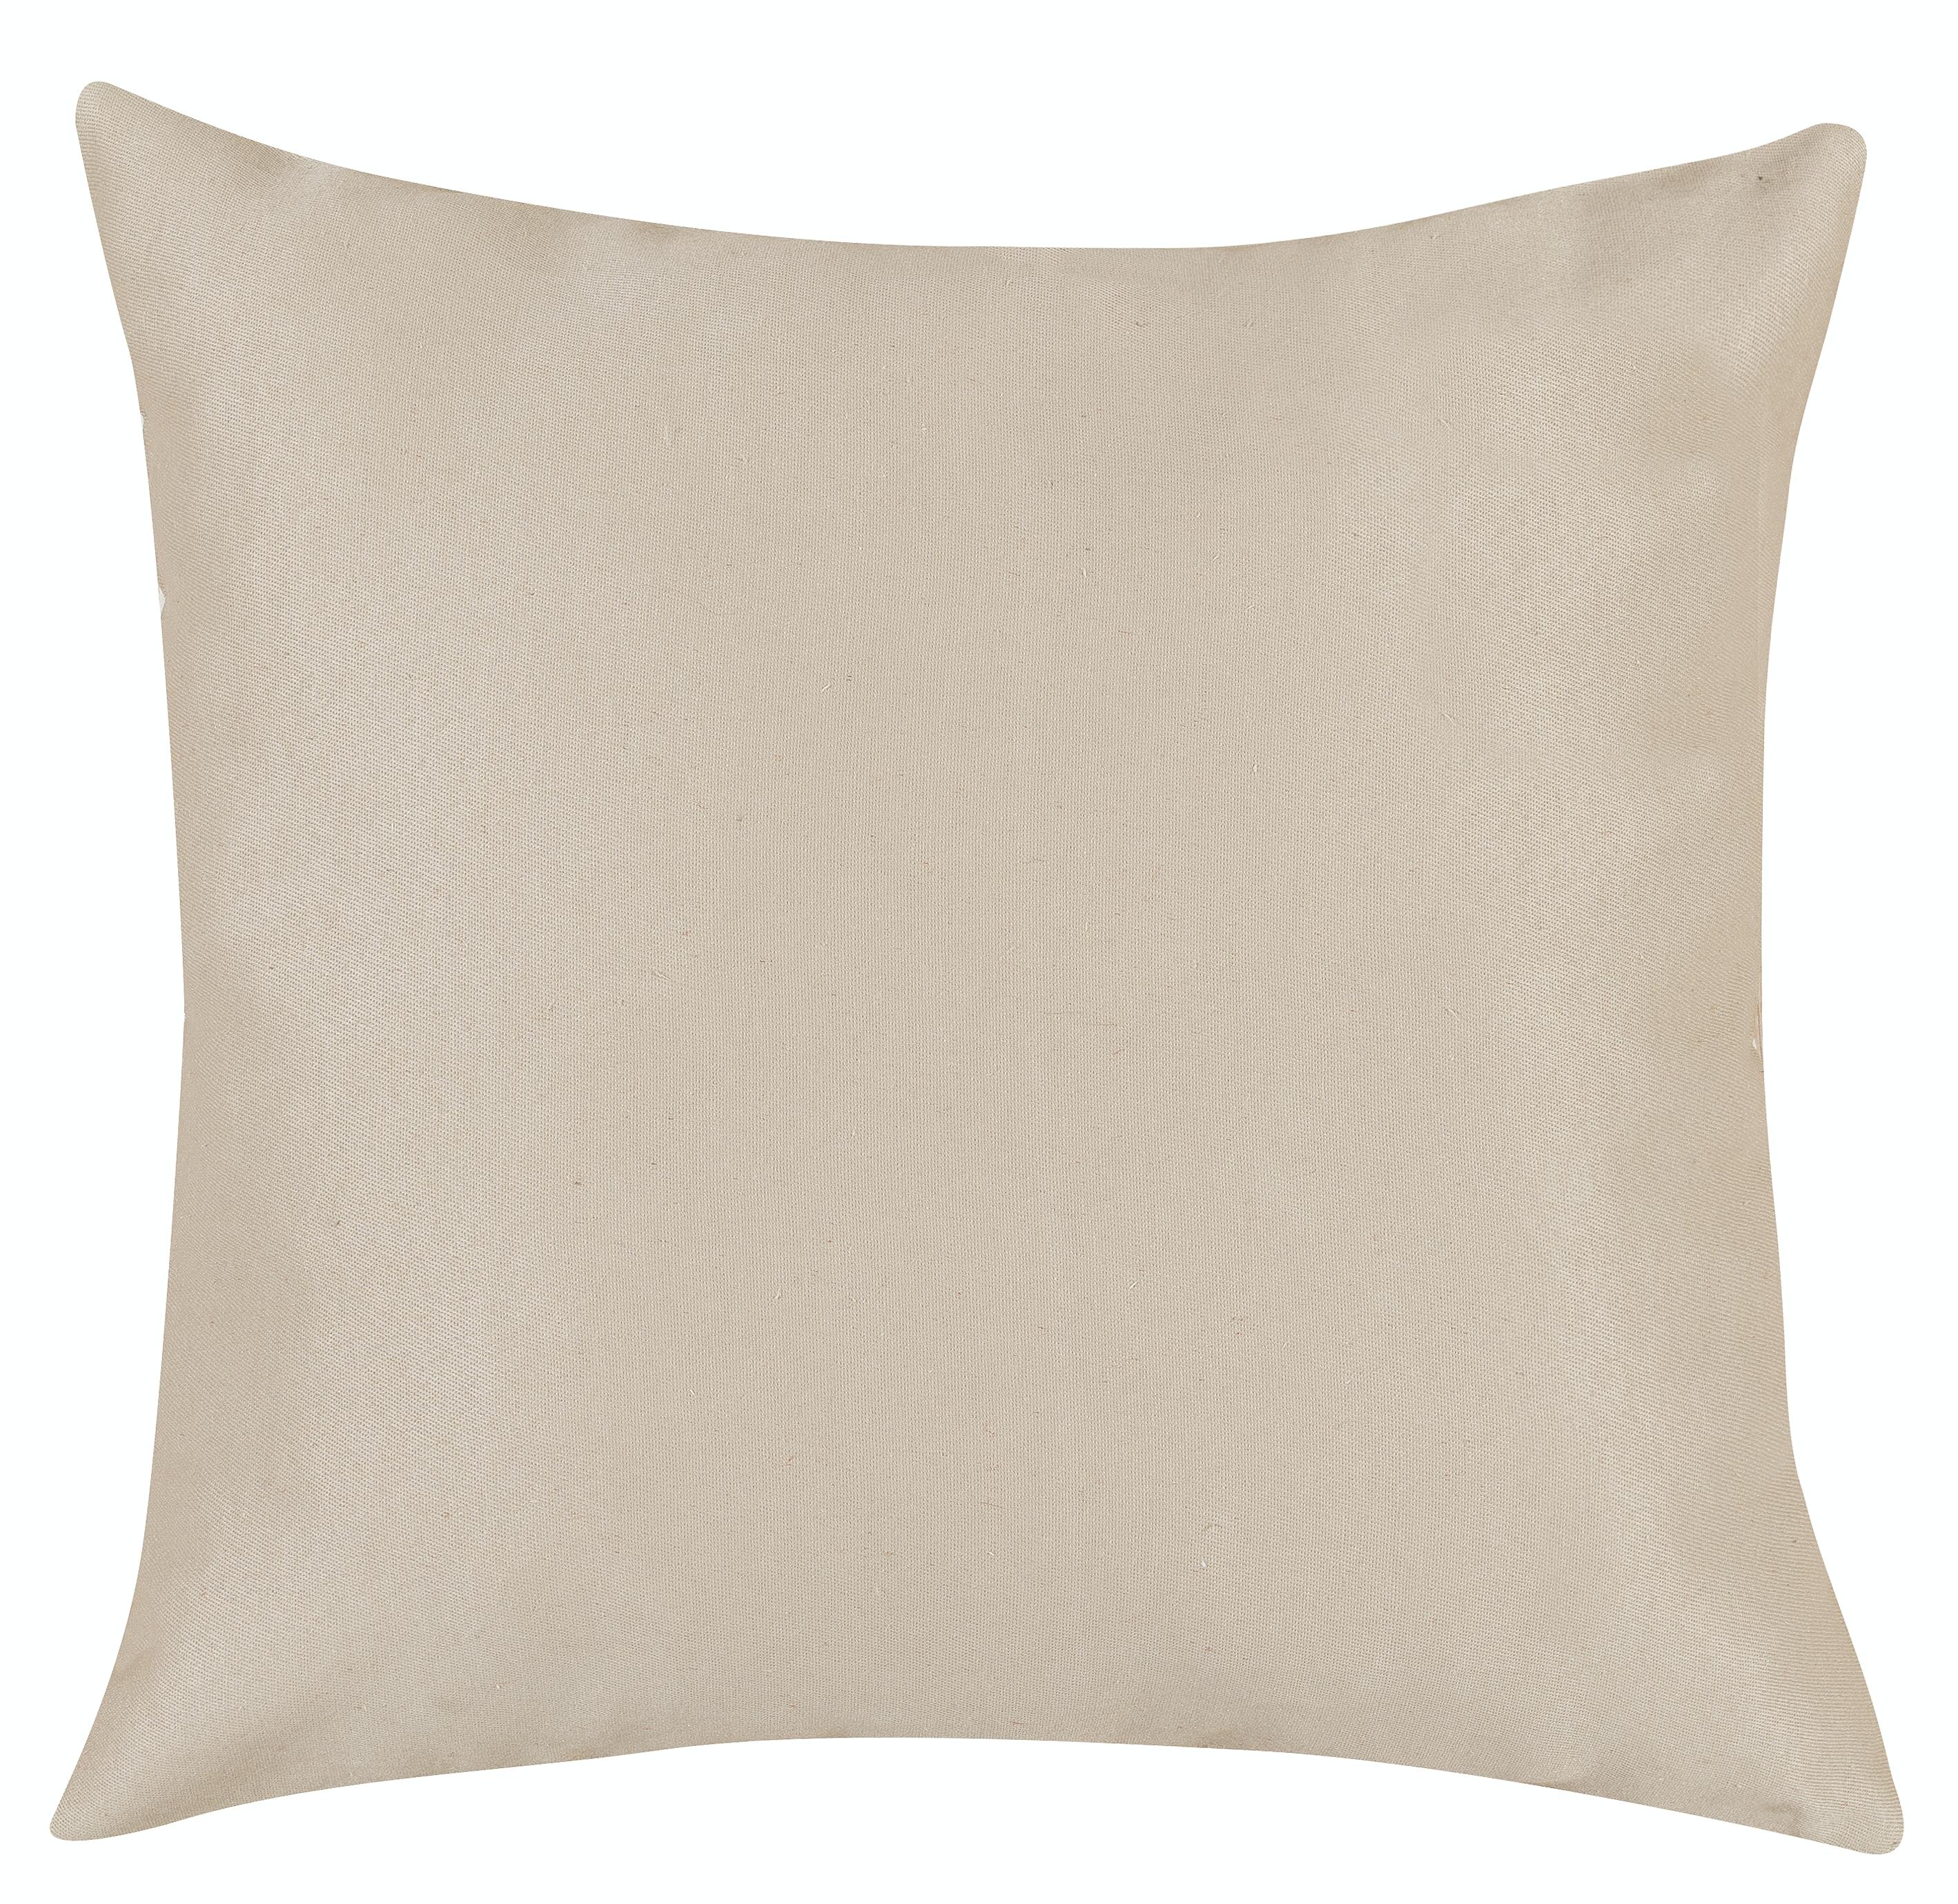 Ouzbek Home Decor Toss Pillow Cover (housse de coussin). Housse de coussin en soie Suzani brodée à la main. 18 